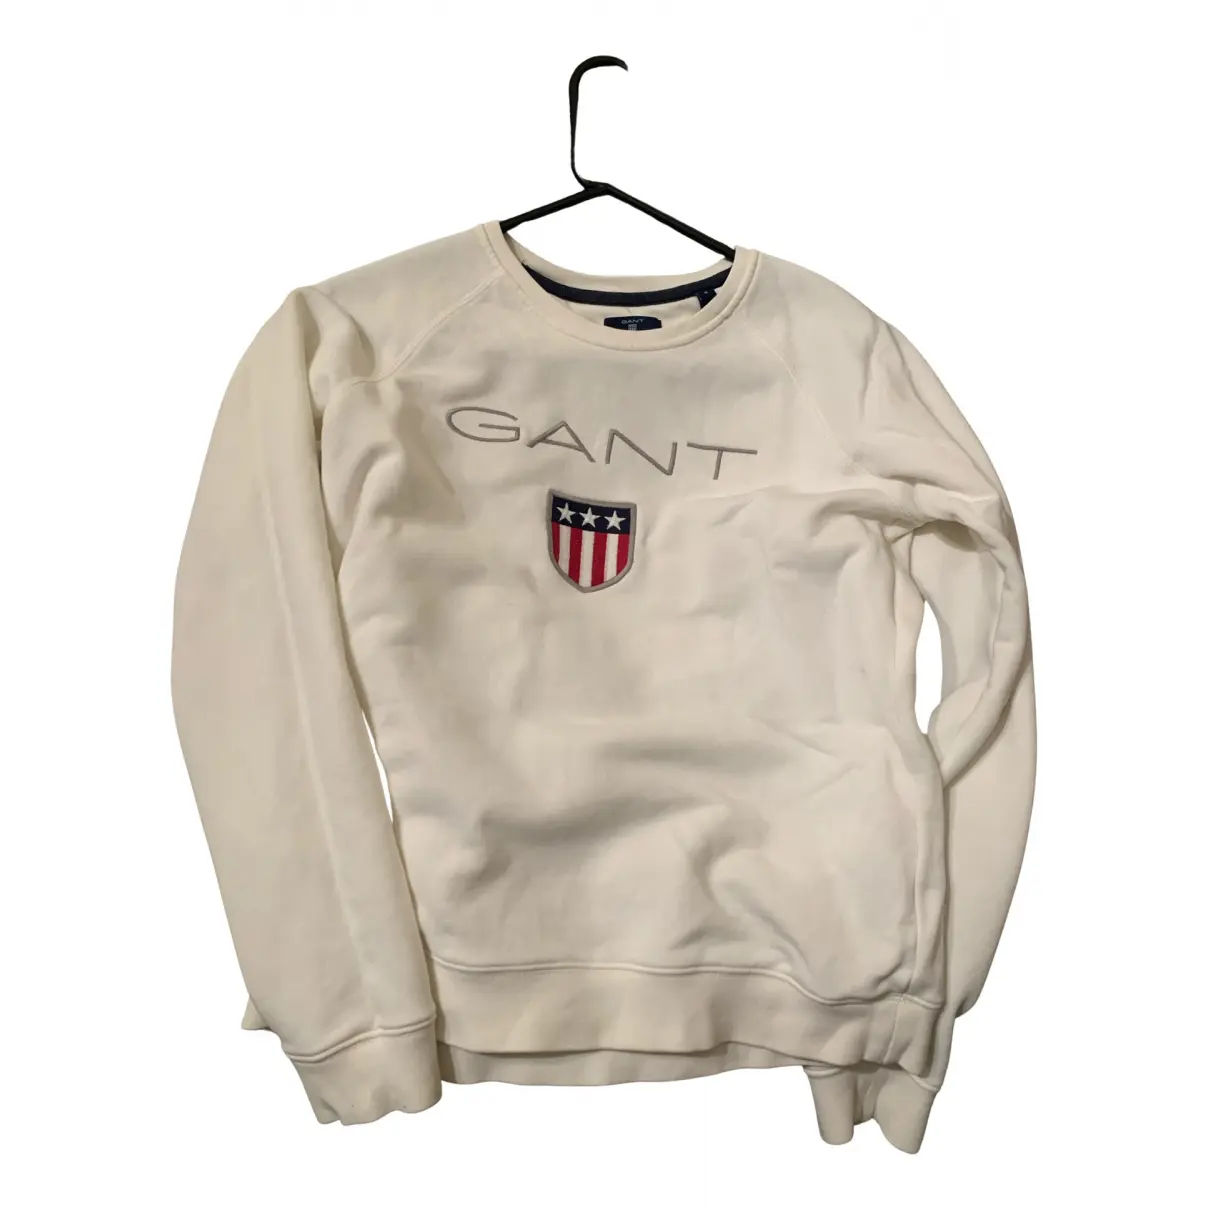 Knitwear Gant